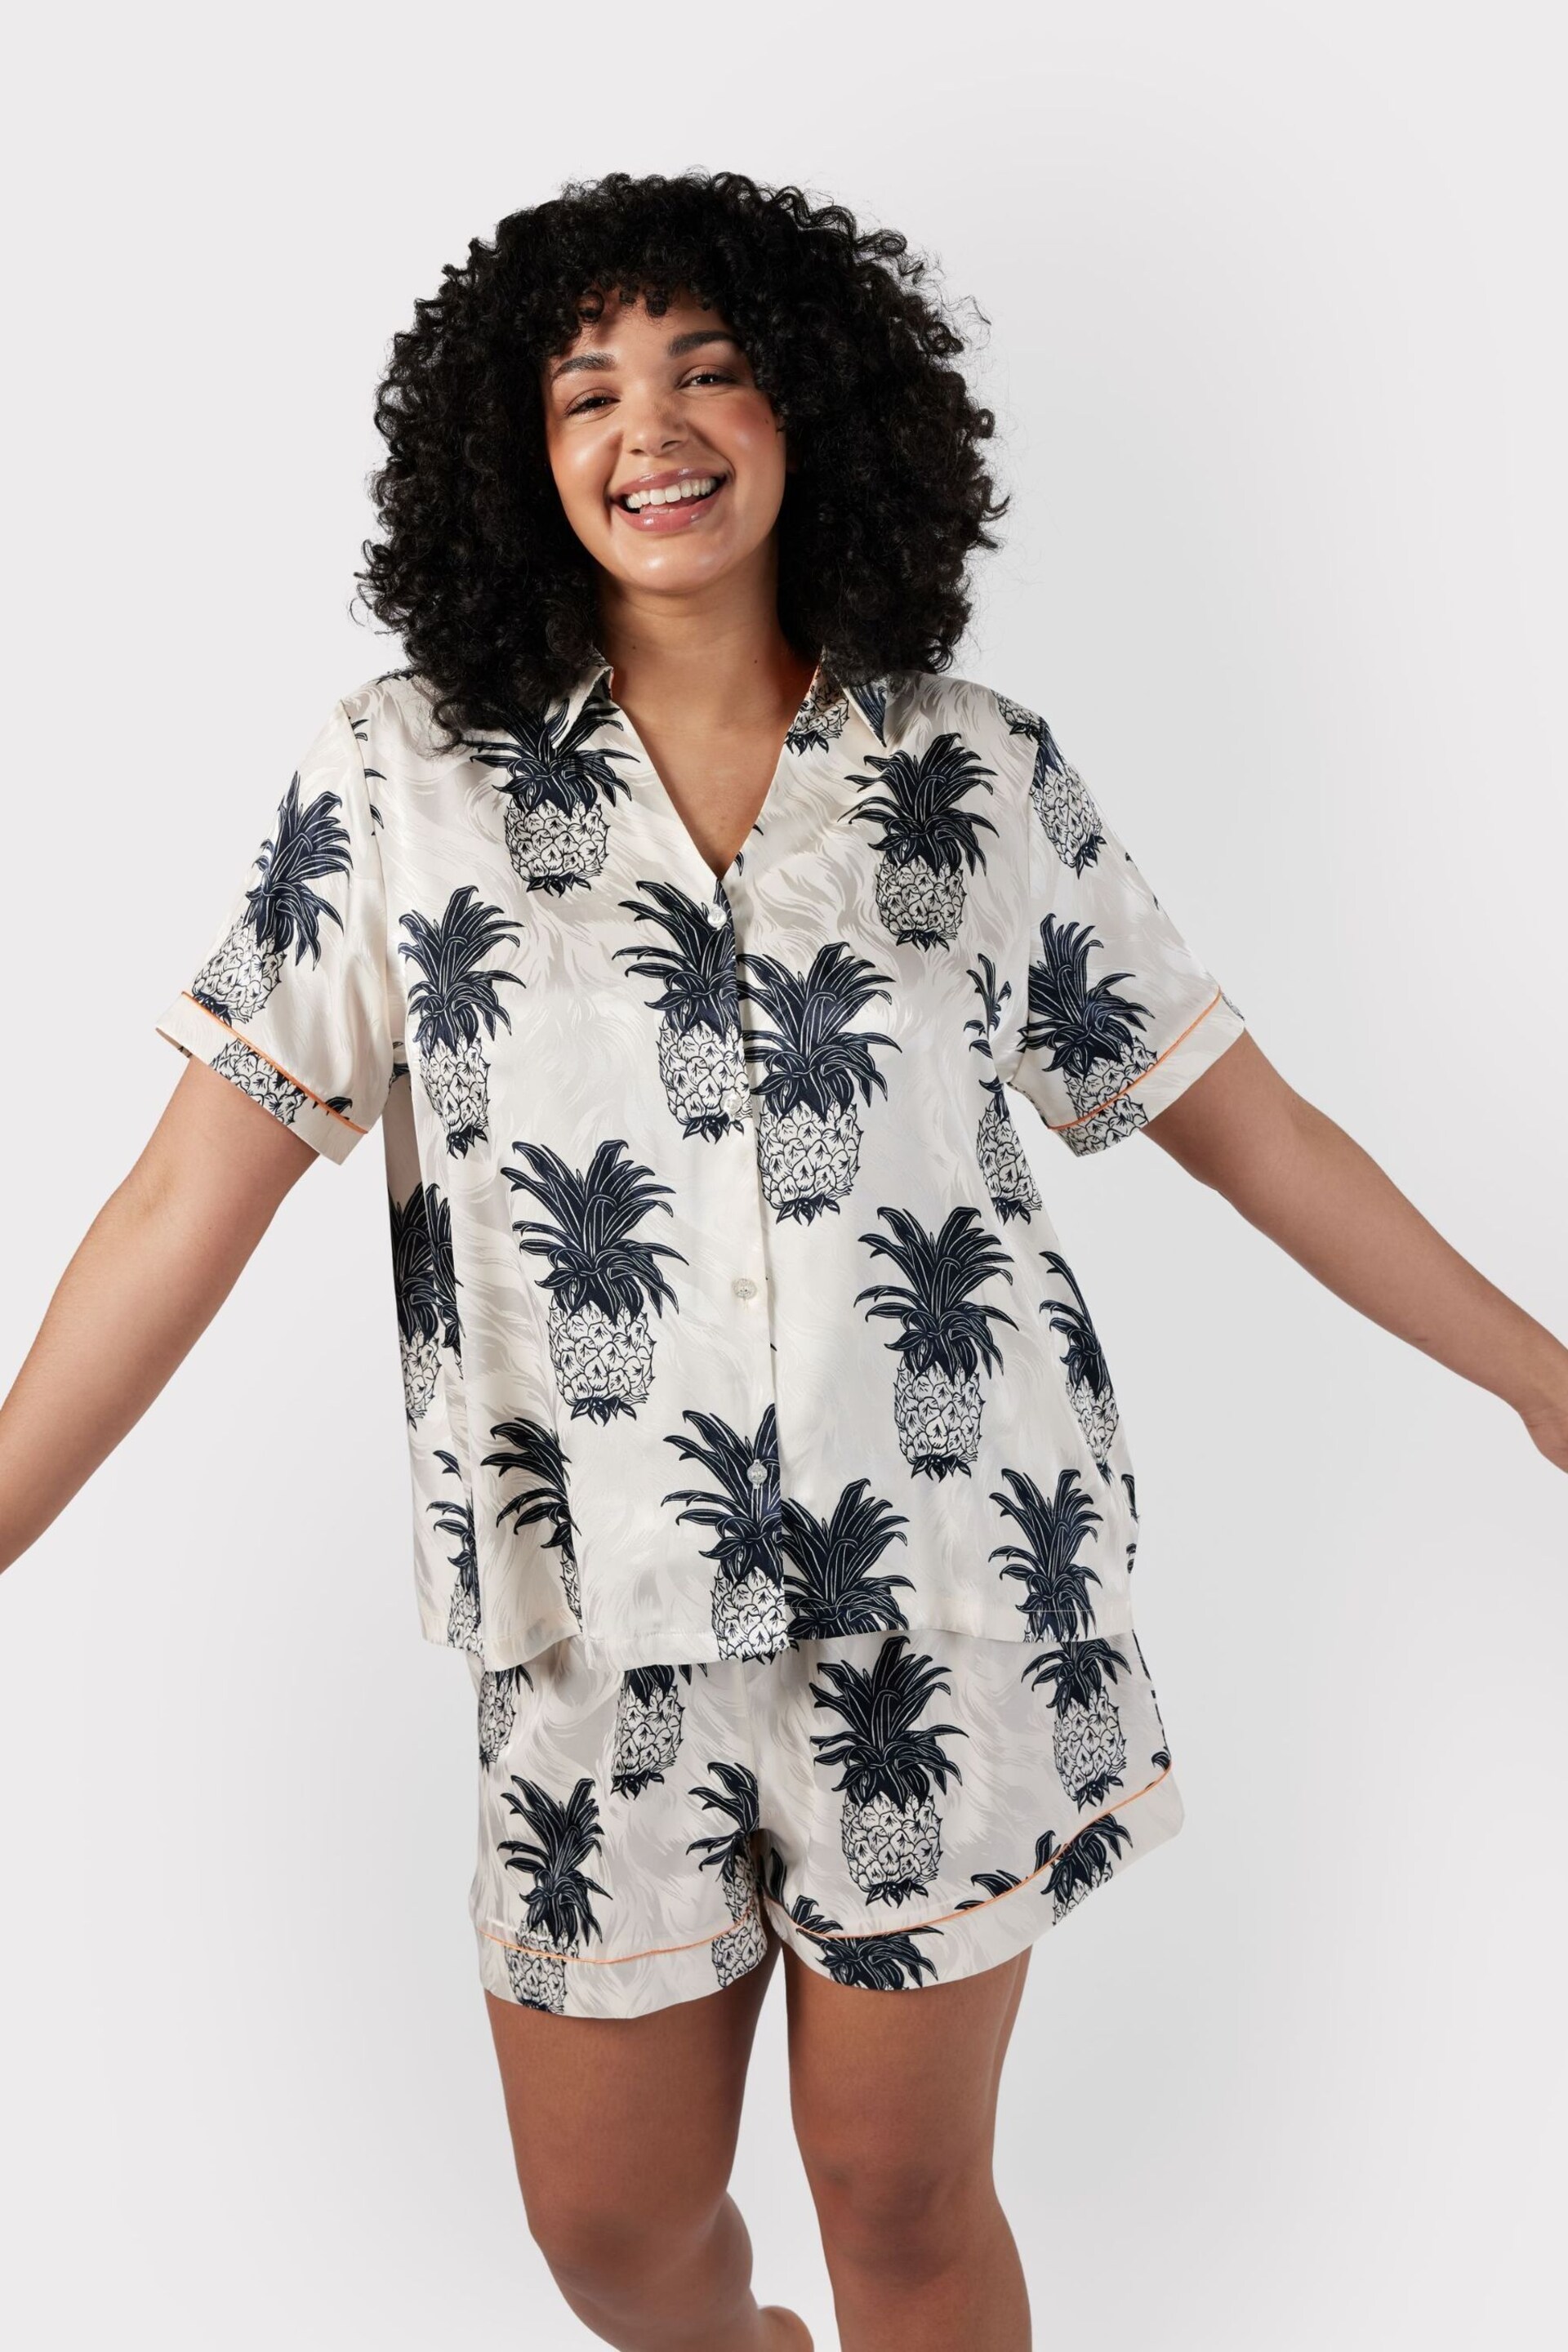 Chelsea Peers Cream Curve Satin Jacquard Pineapple Short Pyjama Set - Image 2 of 5